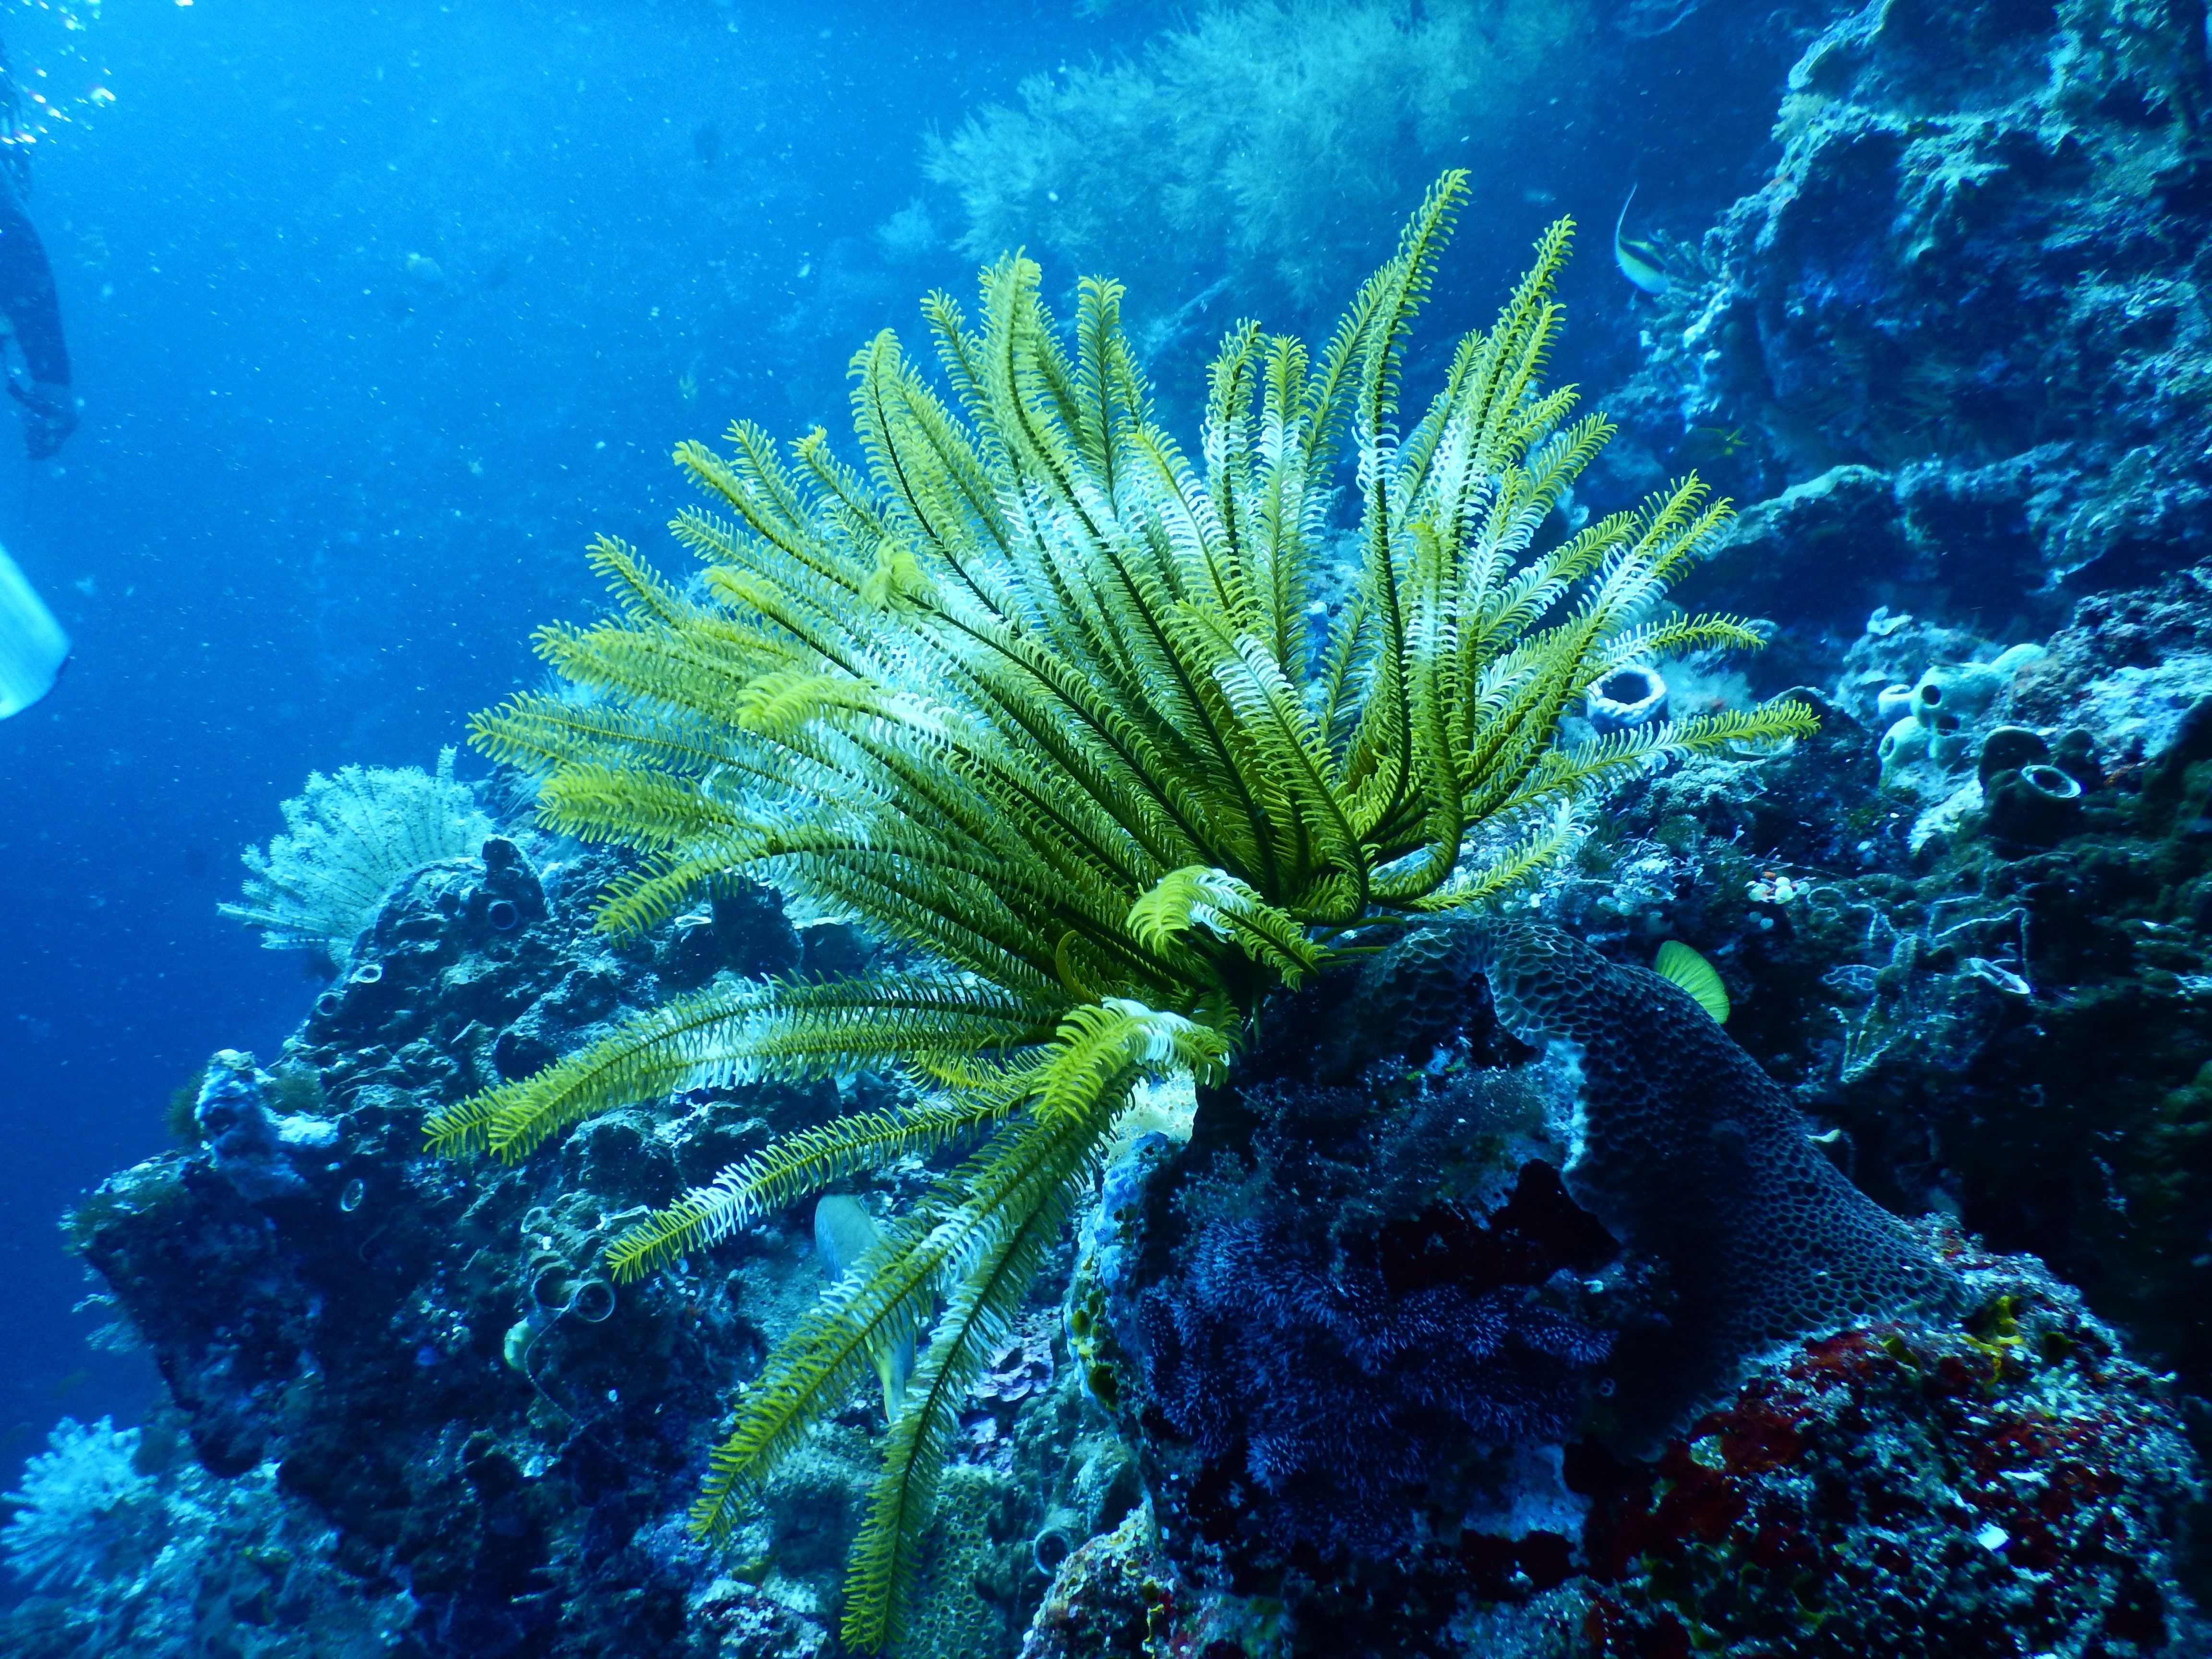 超薄碳酸鈣「遮陽膜」 保護澳洲大堡礁